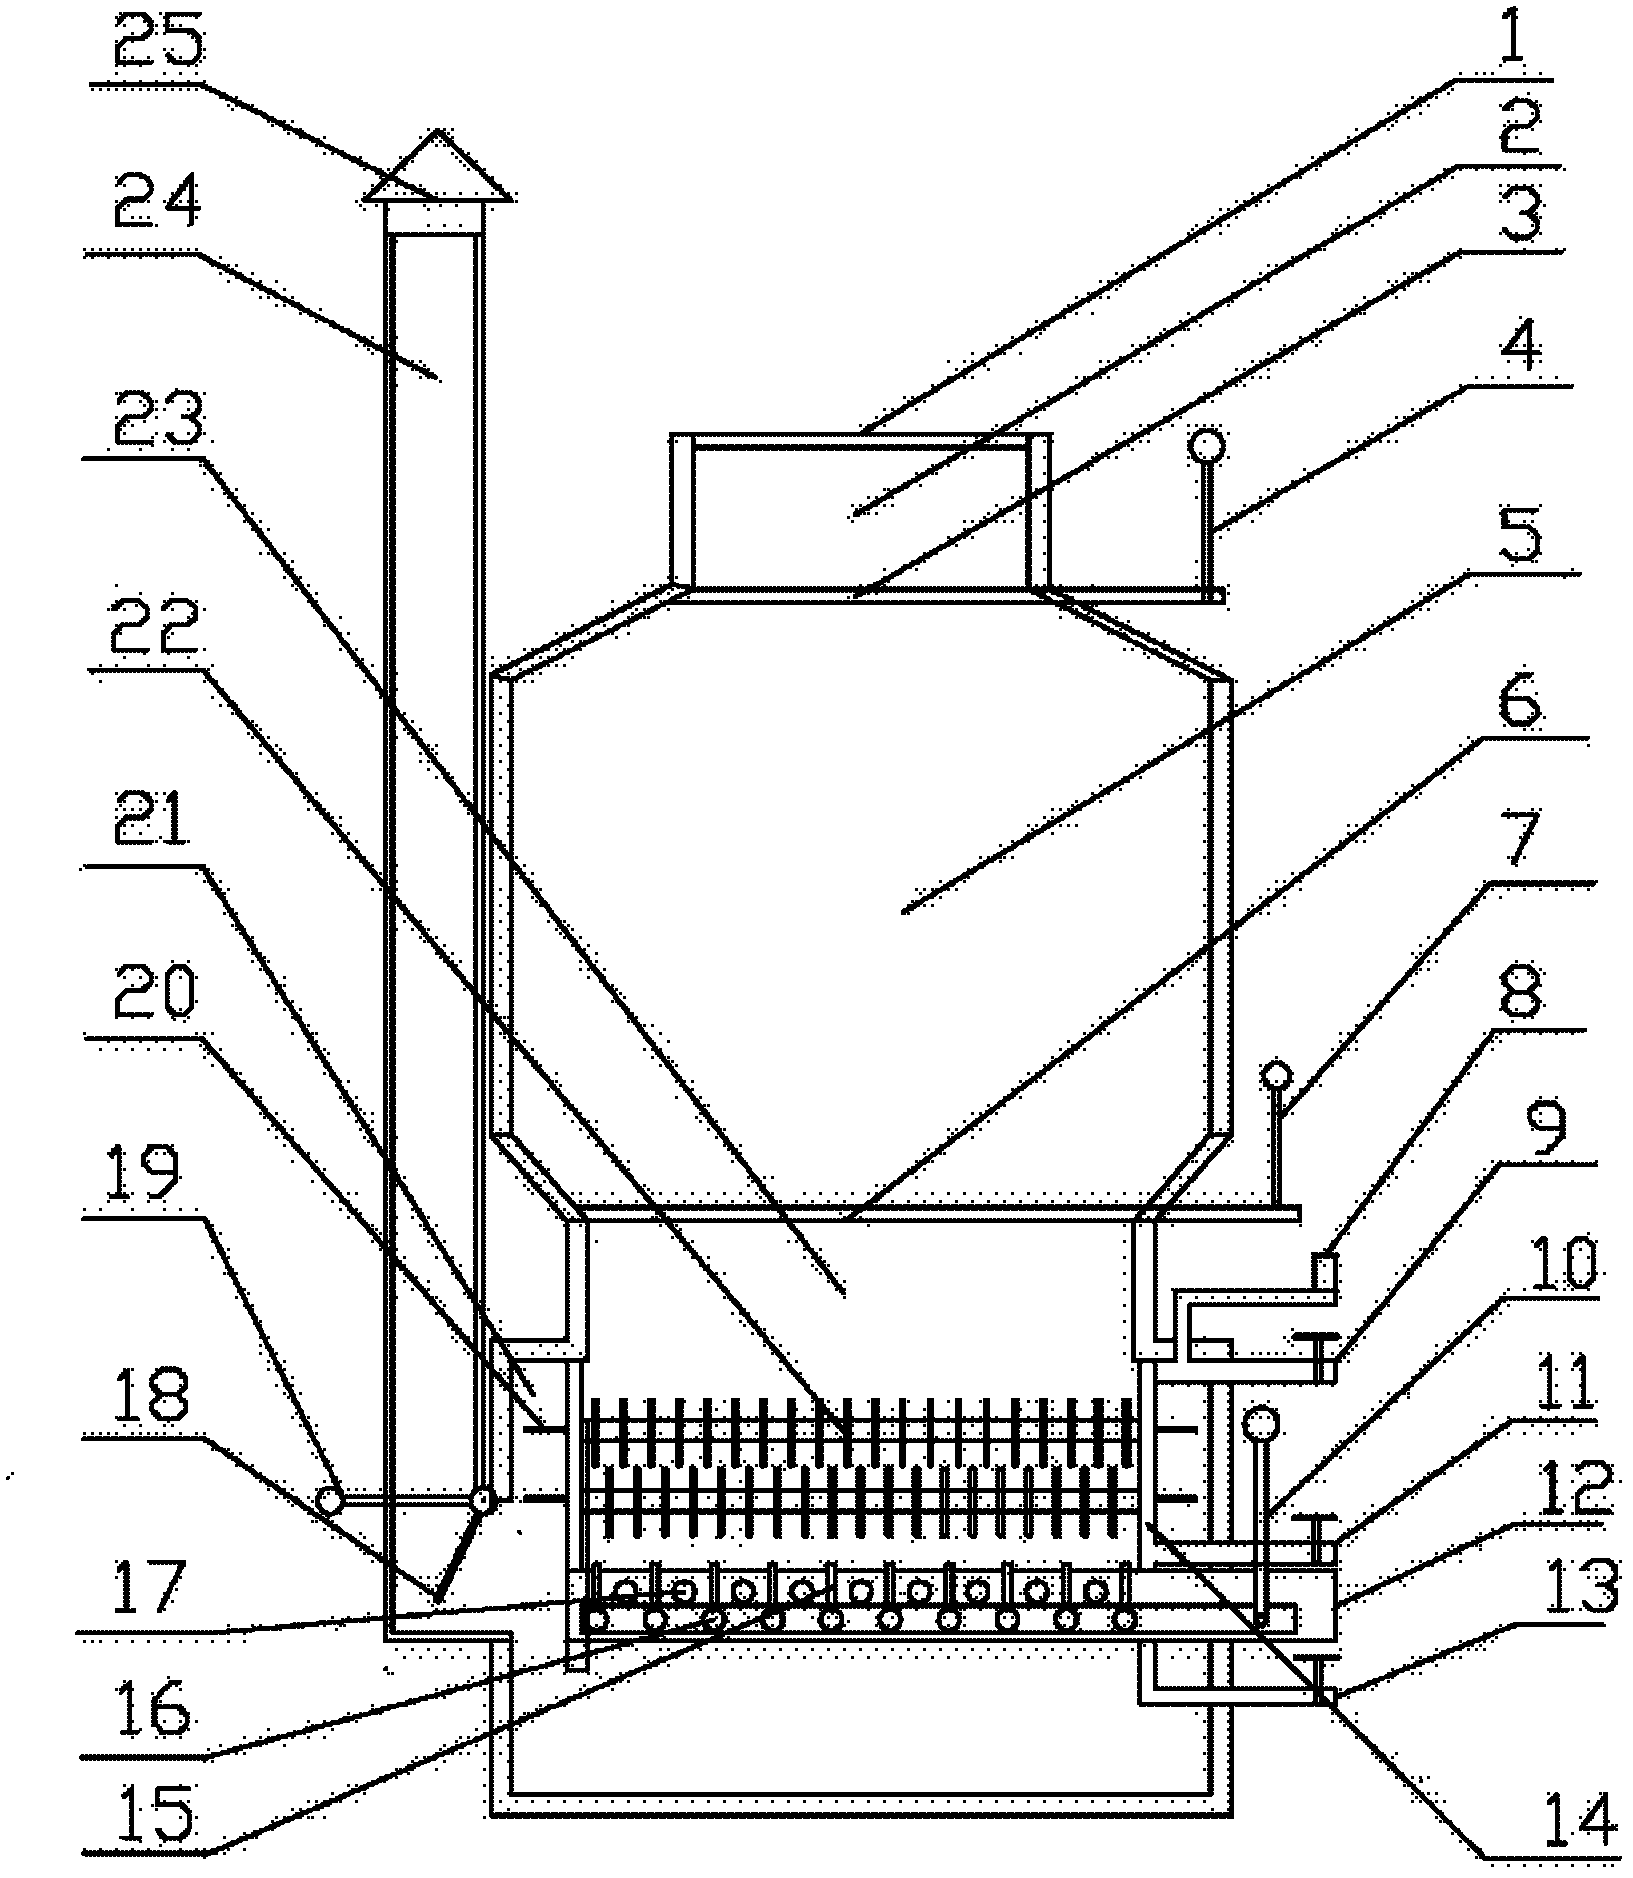 Inverted grate-firing boiler